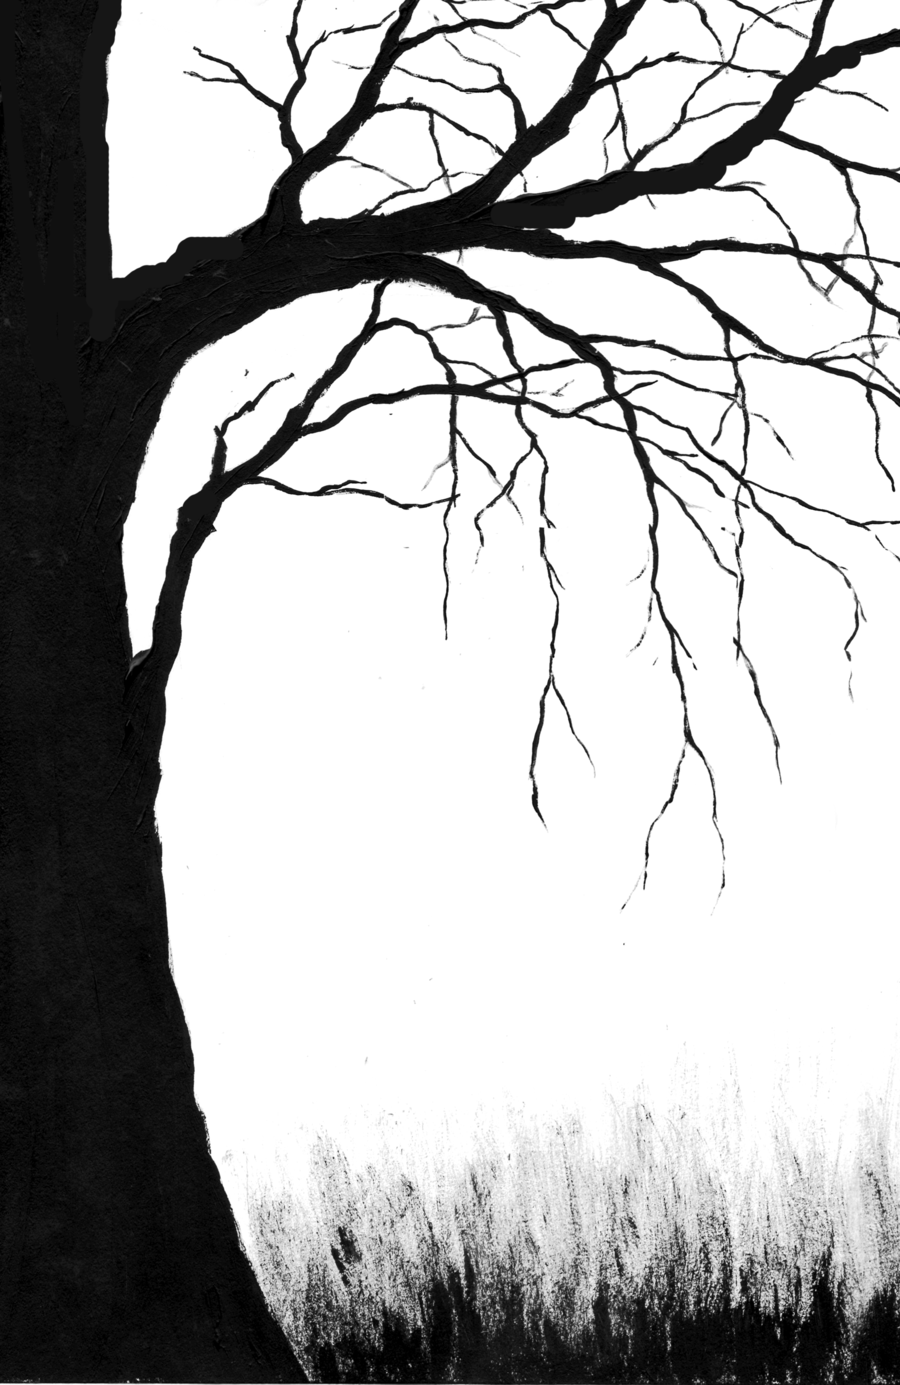 creepy dead tree sketch